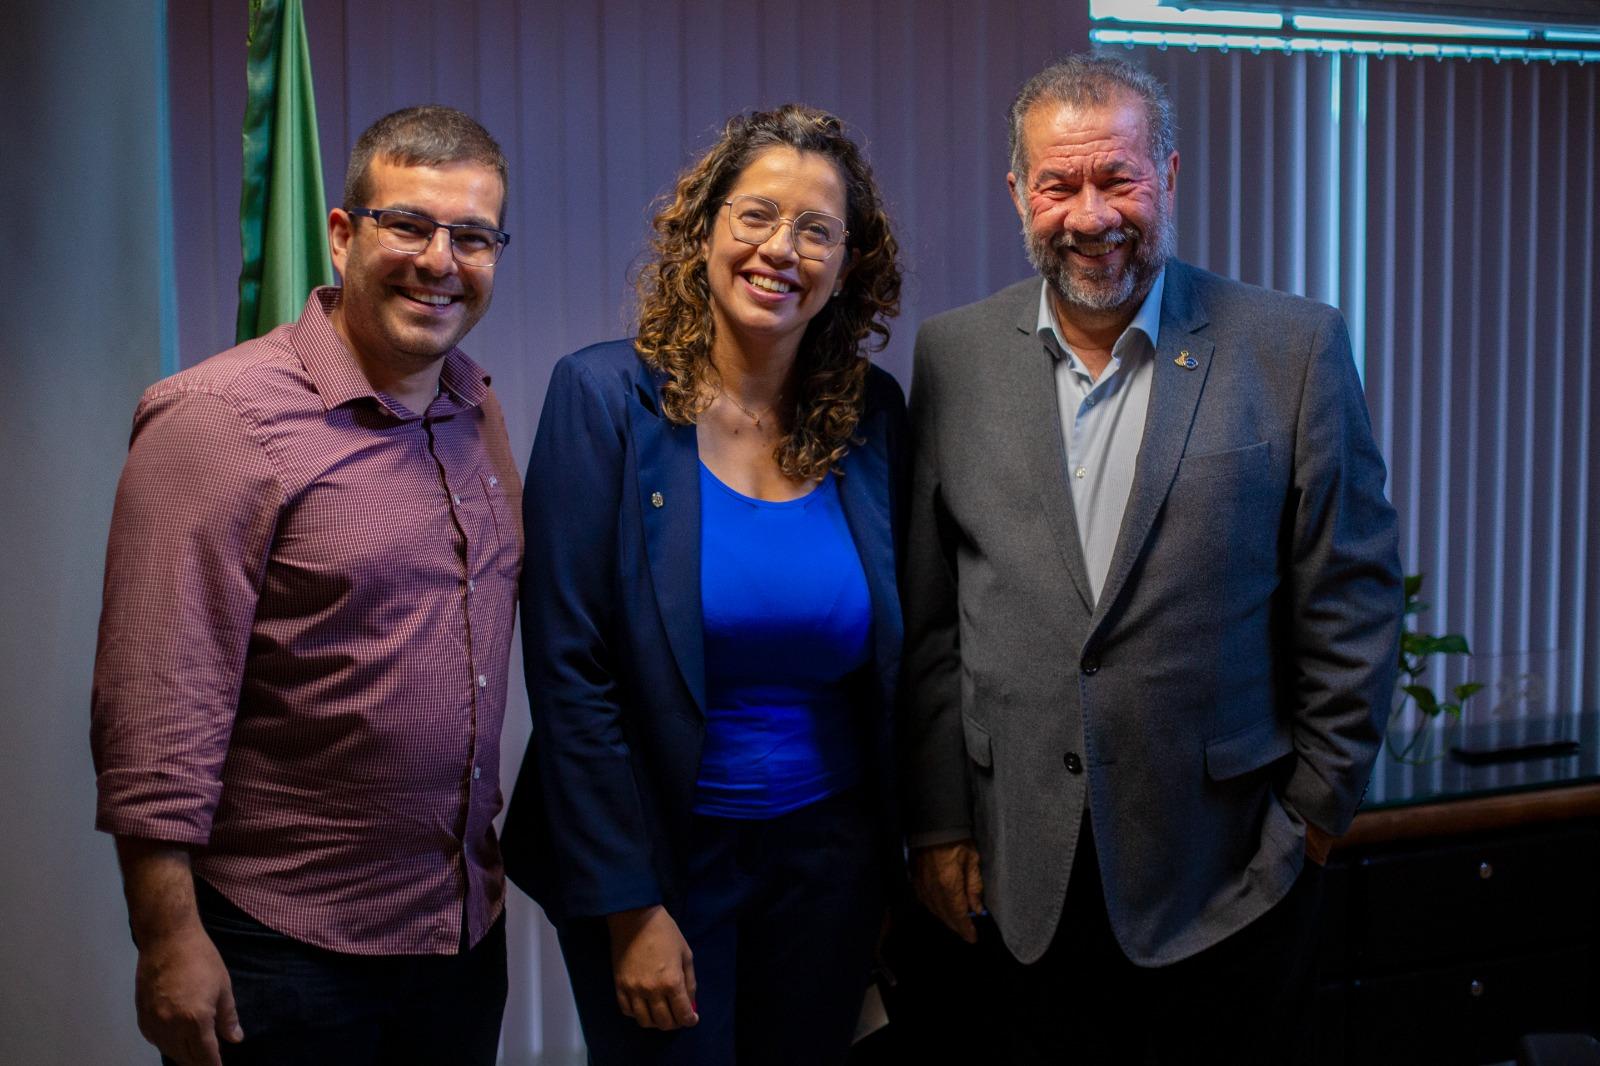 Rafael Bueno esteve com o ministro Carlos Lupi e com a deputada federal Denise Pessôa